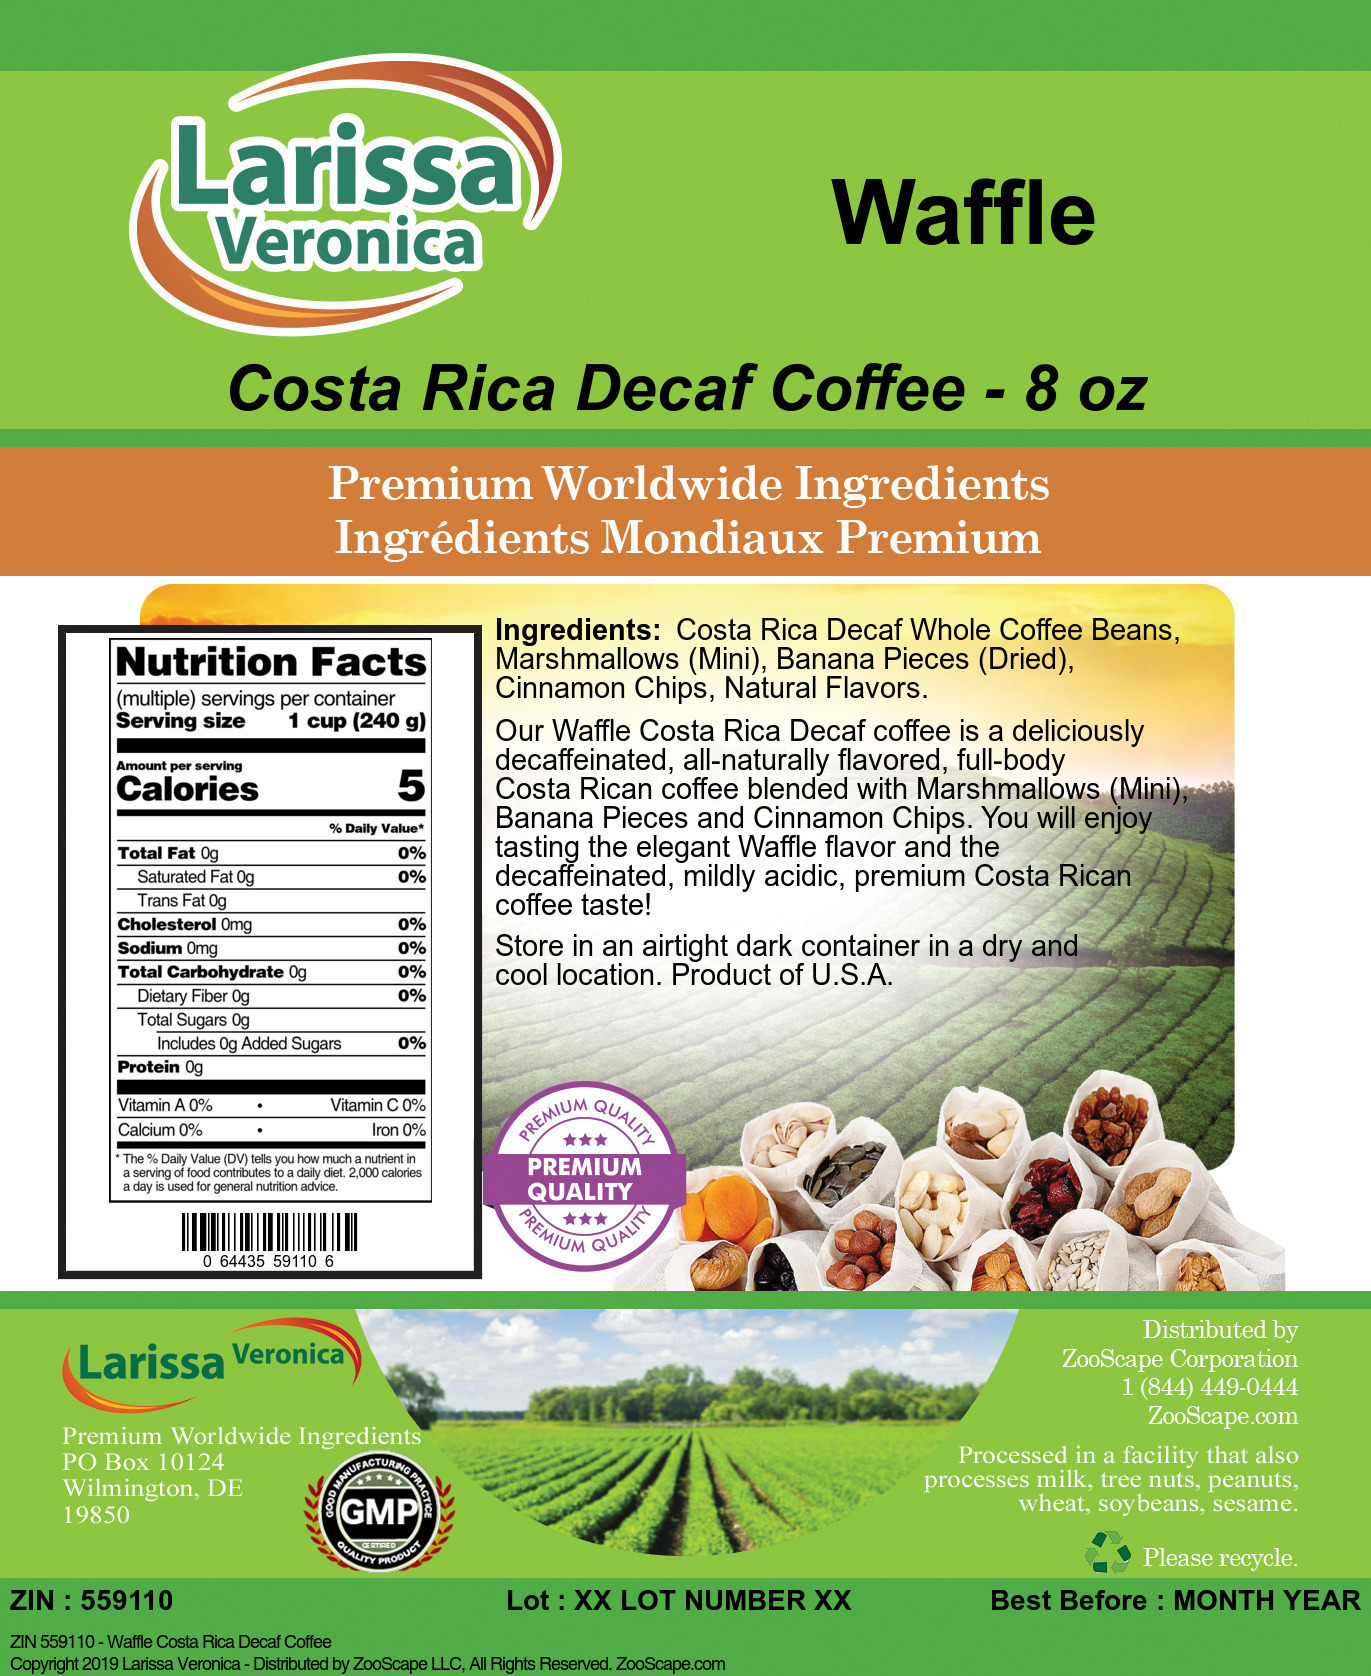 Waffle Costa Rica Decaf Coffee - Label